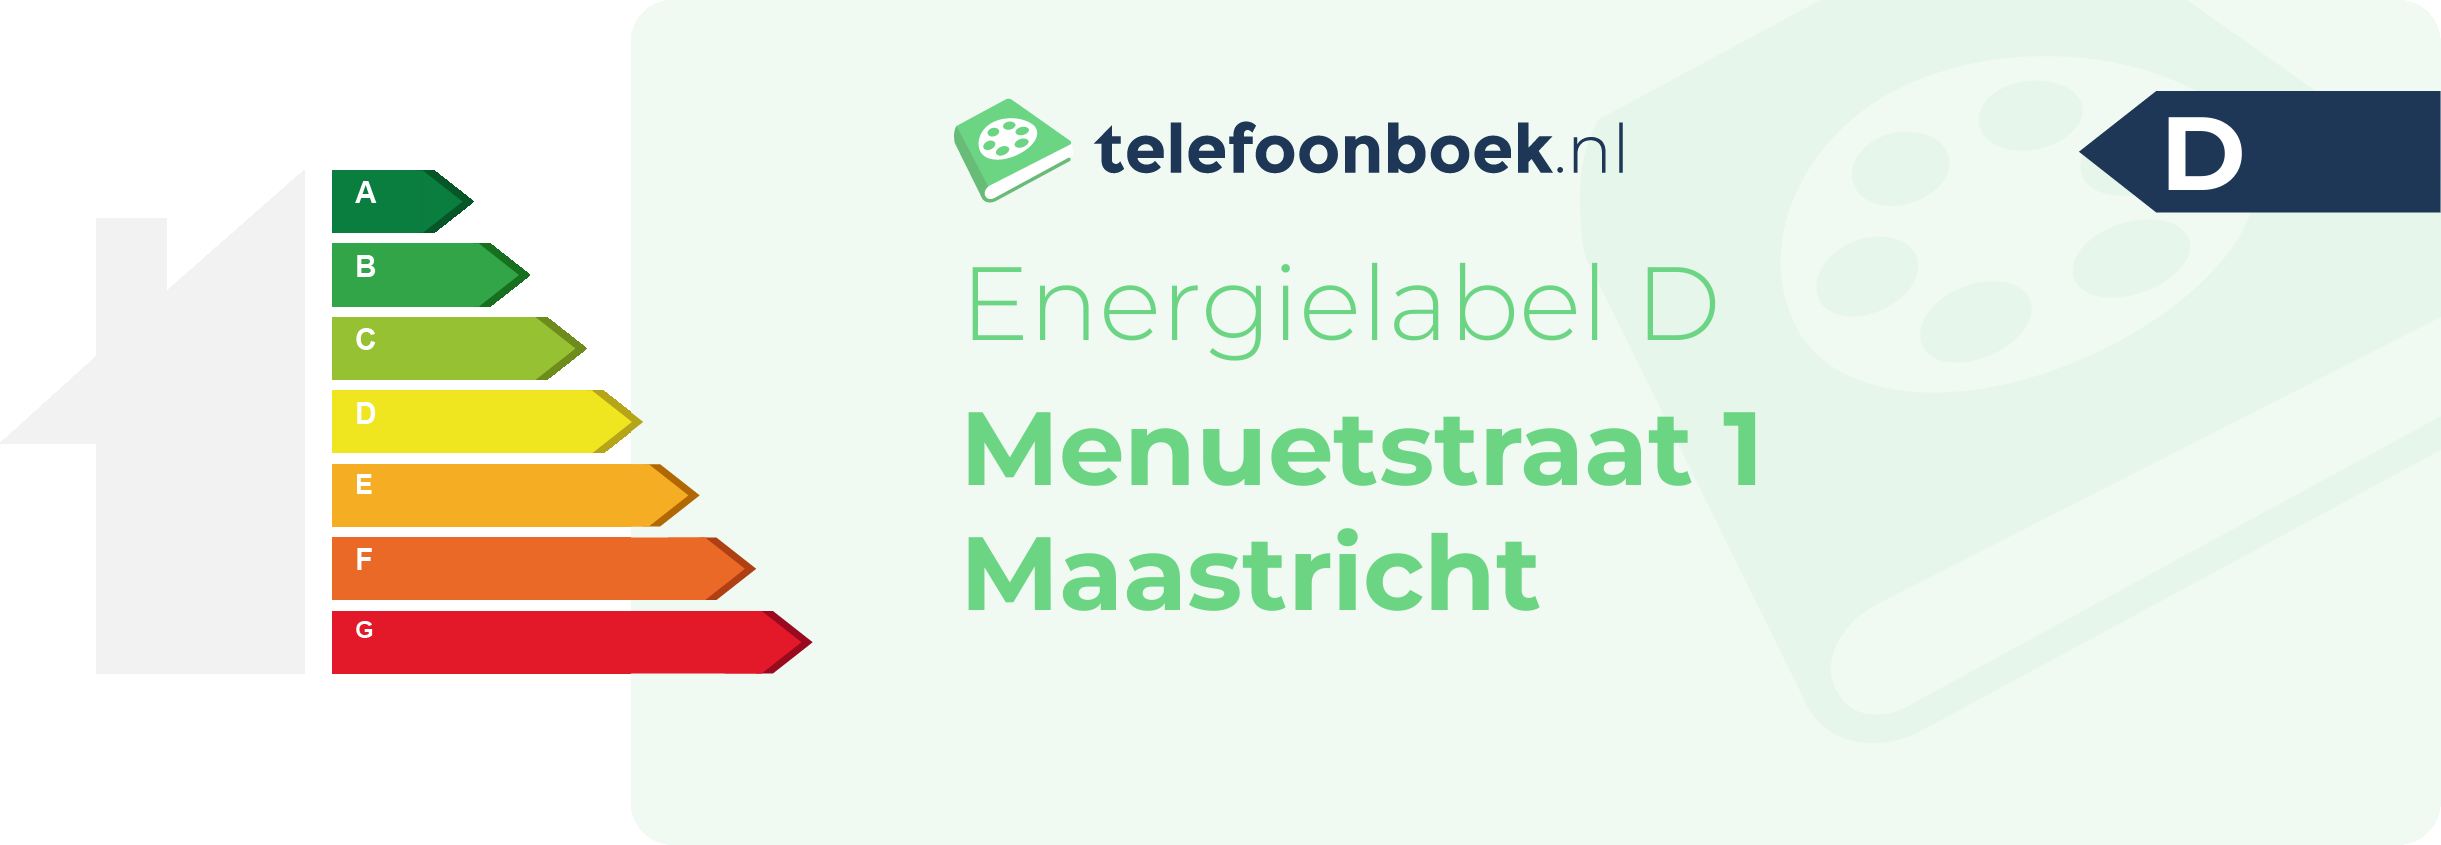 Energielabel Menuetstraat 1 Maastricht